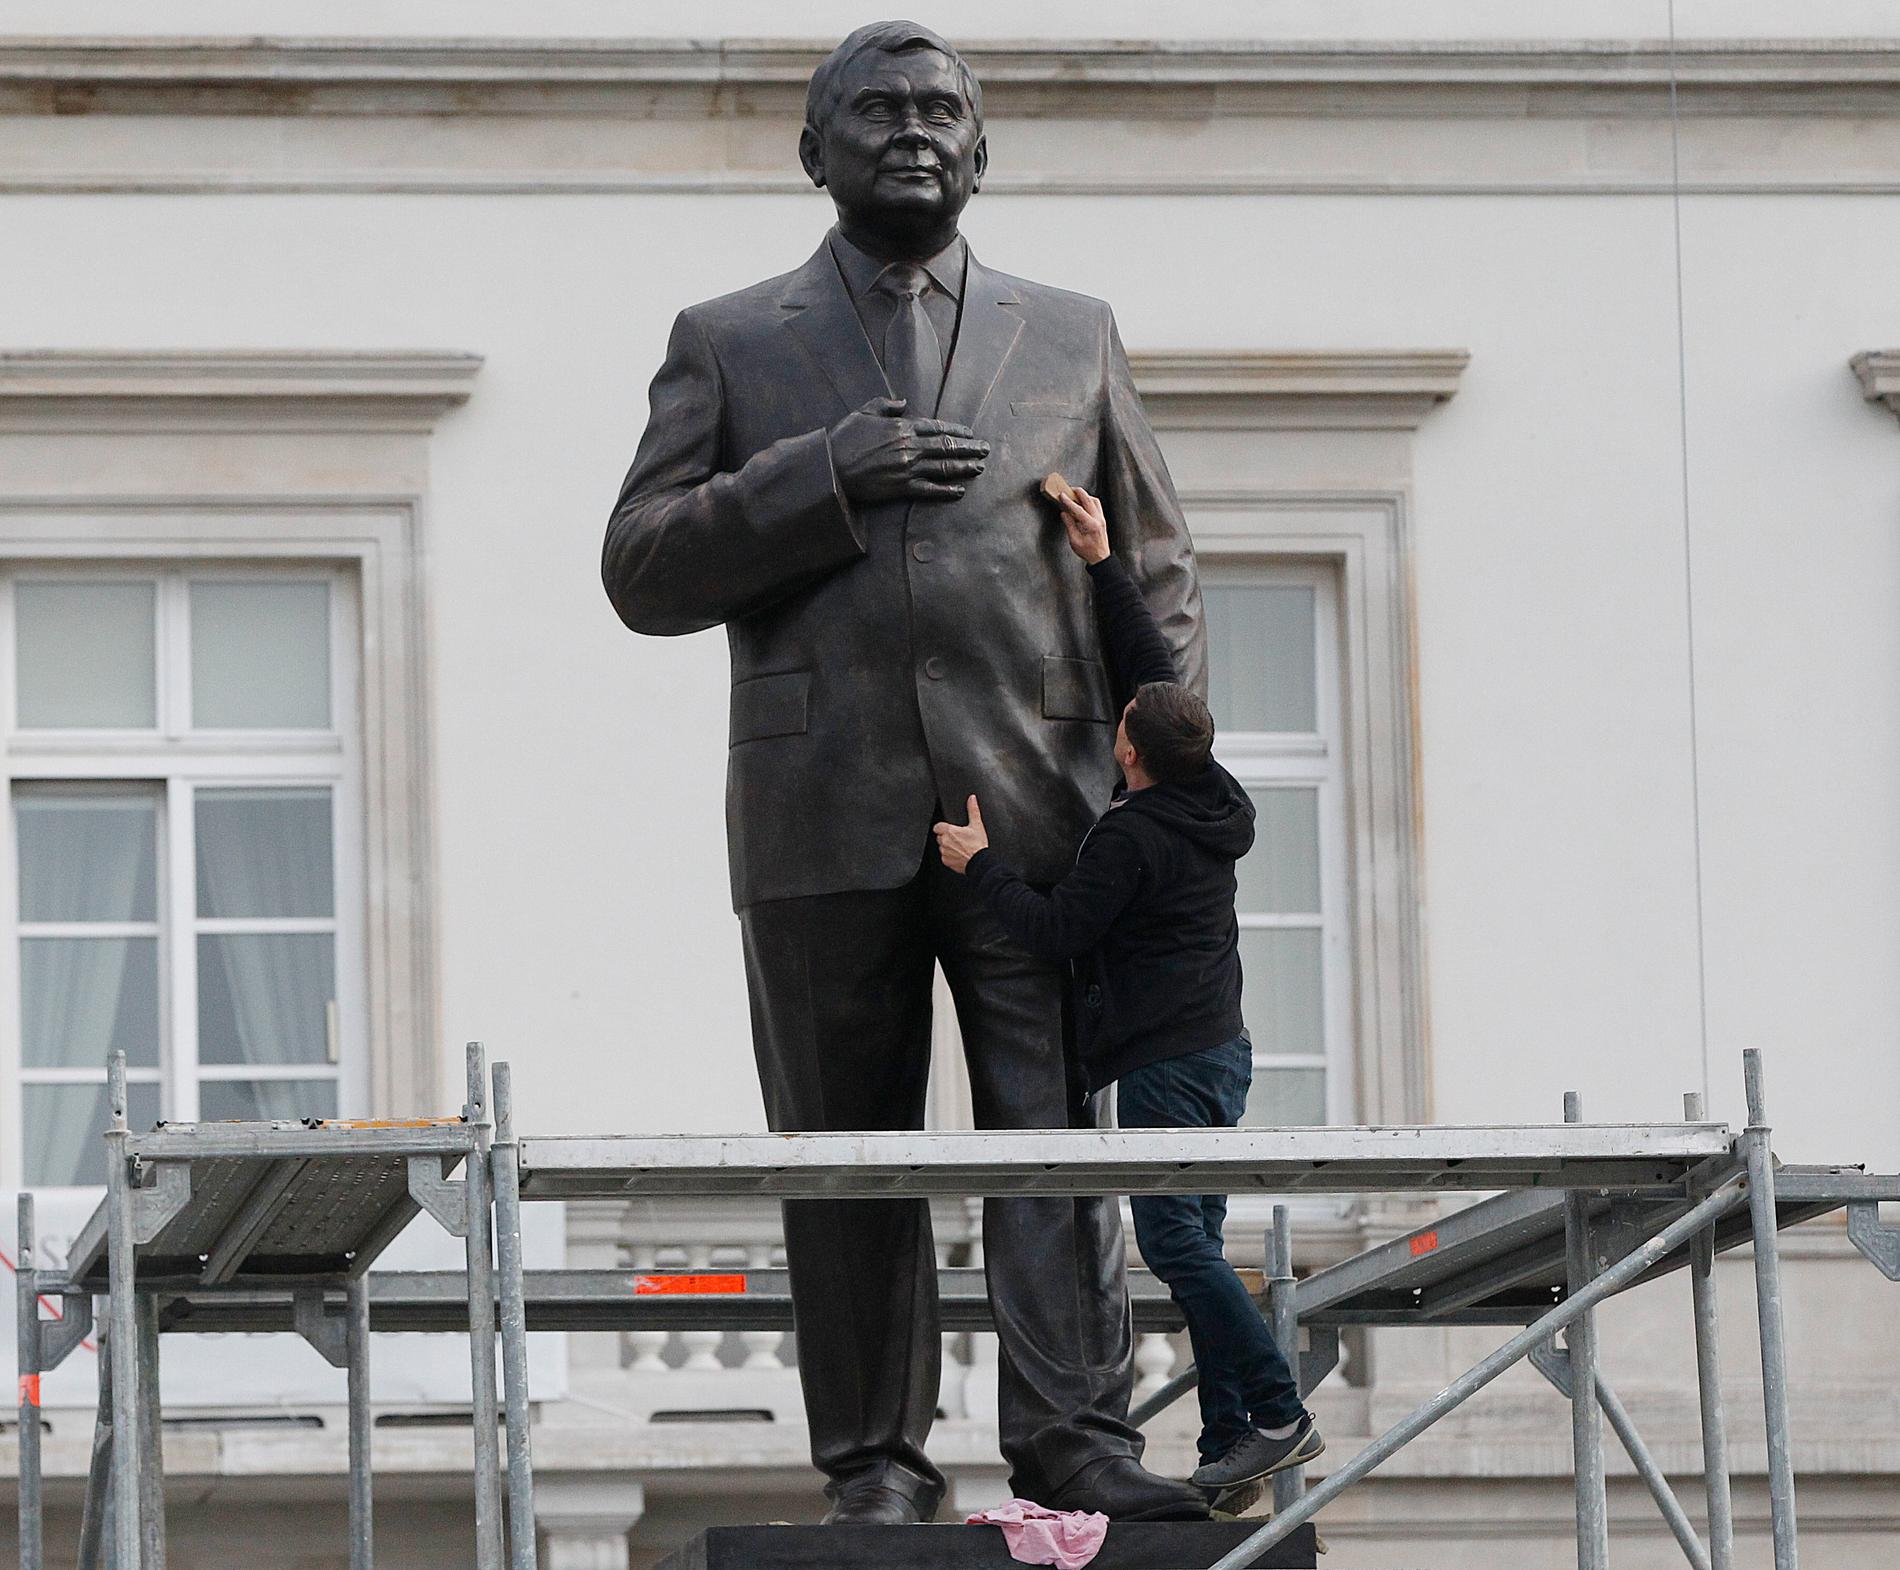 Den omkomne presidenten Lech Kaczynski står staty i Warszawa. Nu har en dåvarande regeringsrådgivare dömts för "försumlighet" i anslutning till flygkraschen som 2010 tog Kaczynskis liv. Arkivbild.